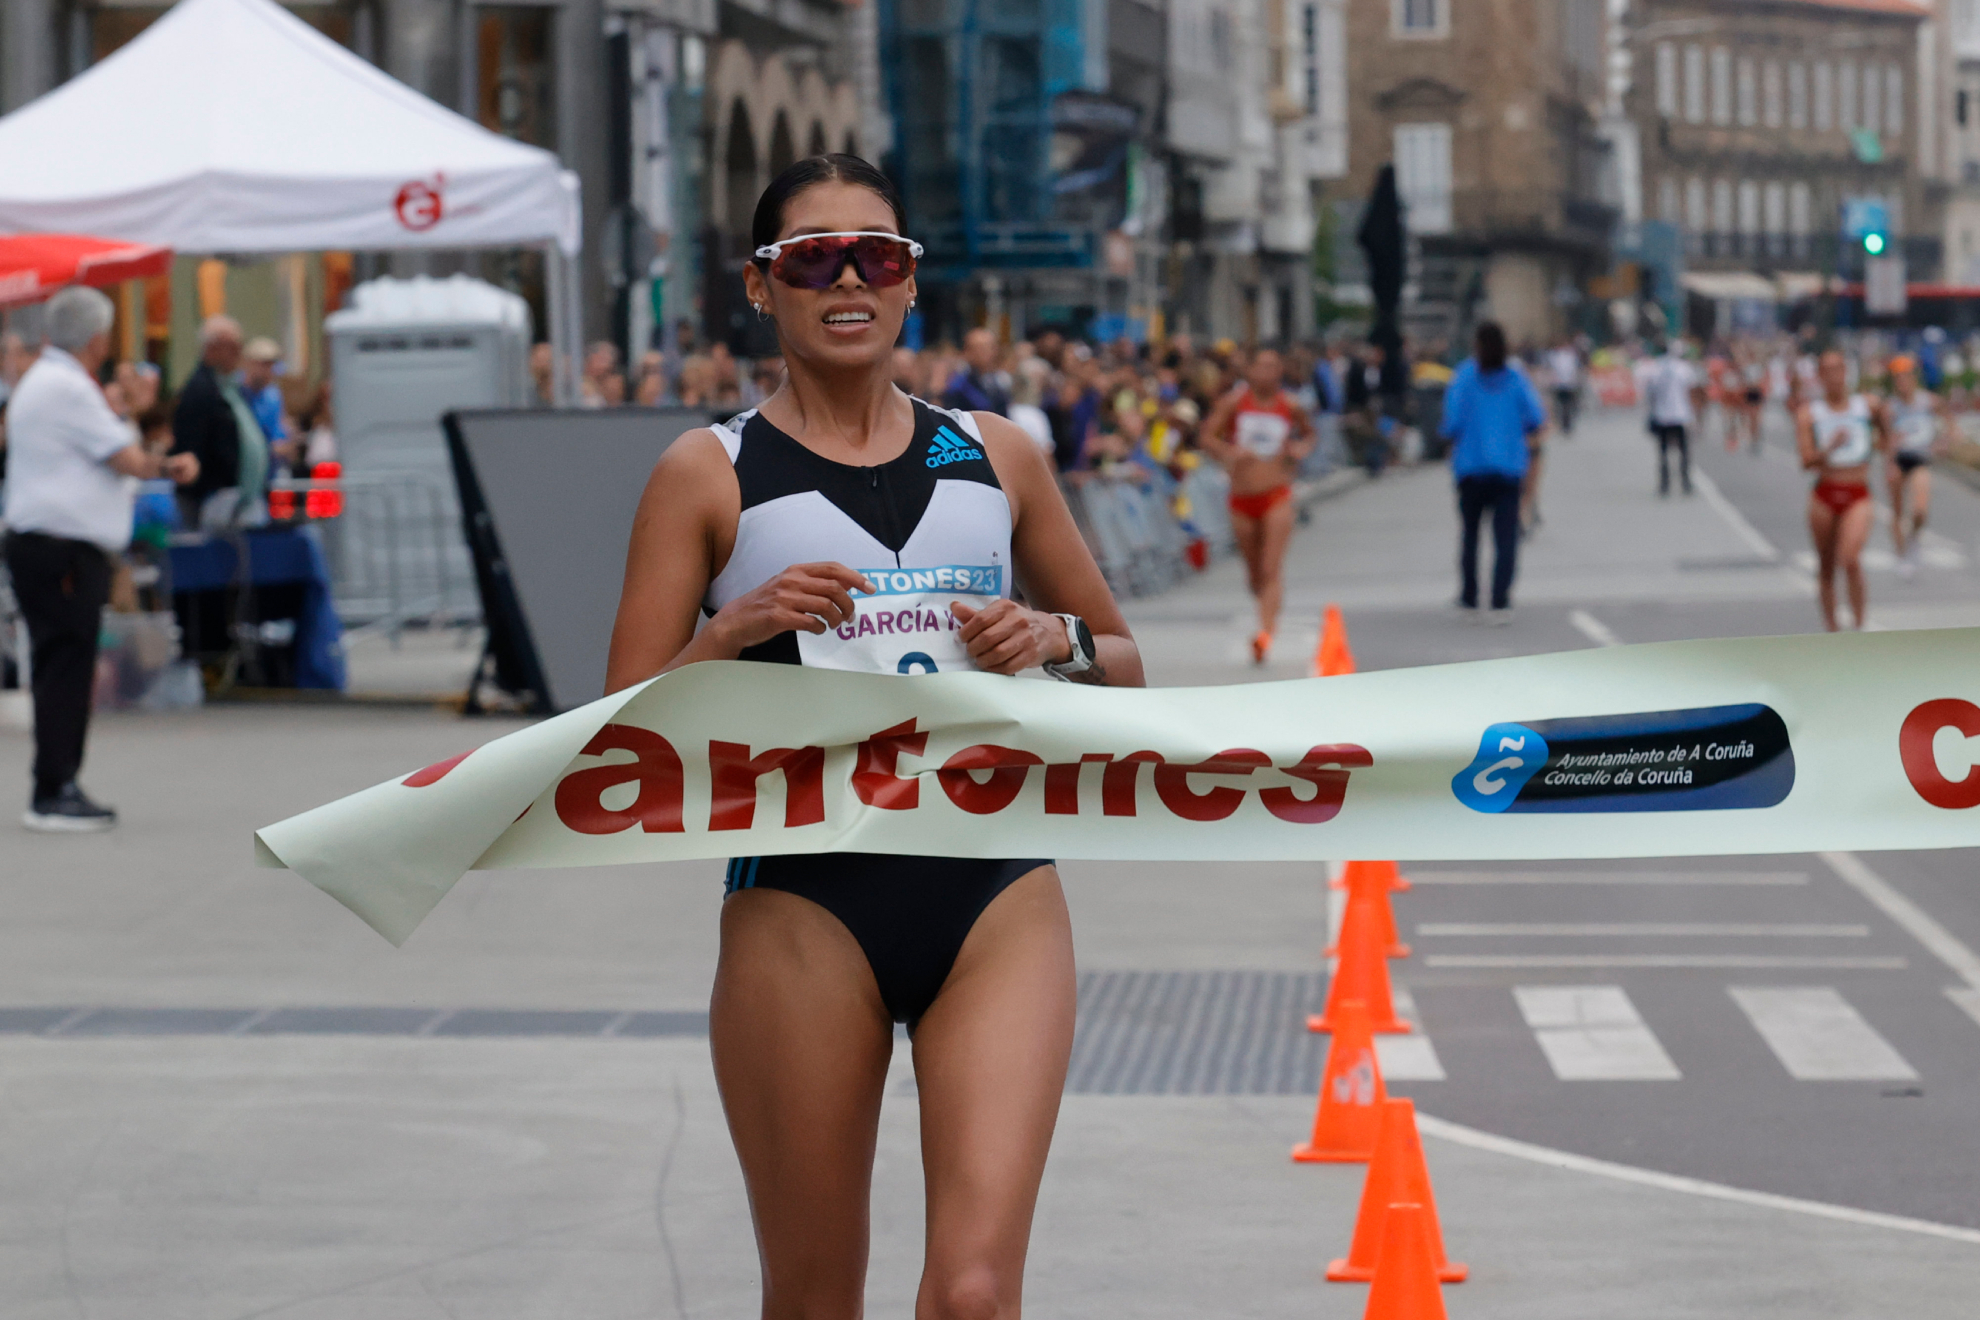 La atleta peruana Kimberly Garcia se impone vencedora de la XXXVI edición del Gran Premio Internacional de Marcha Cantones.